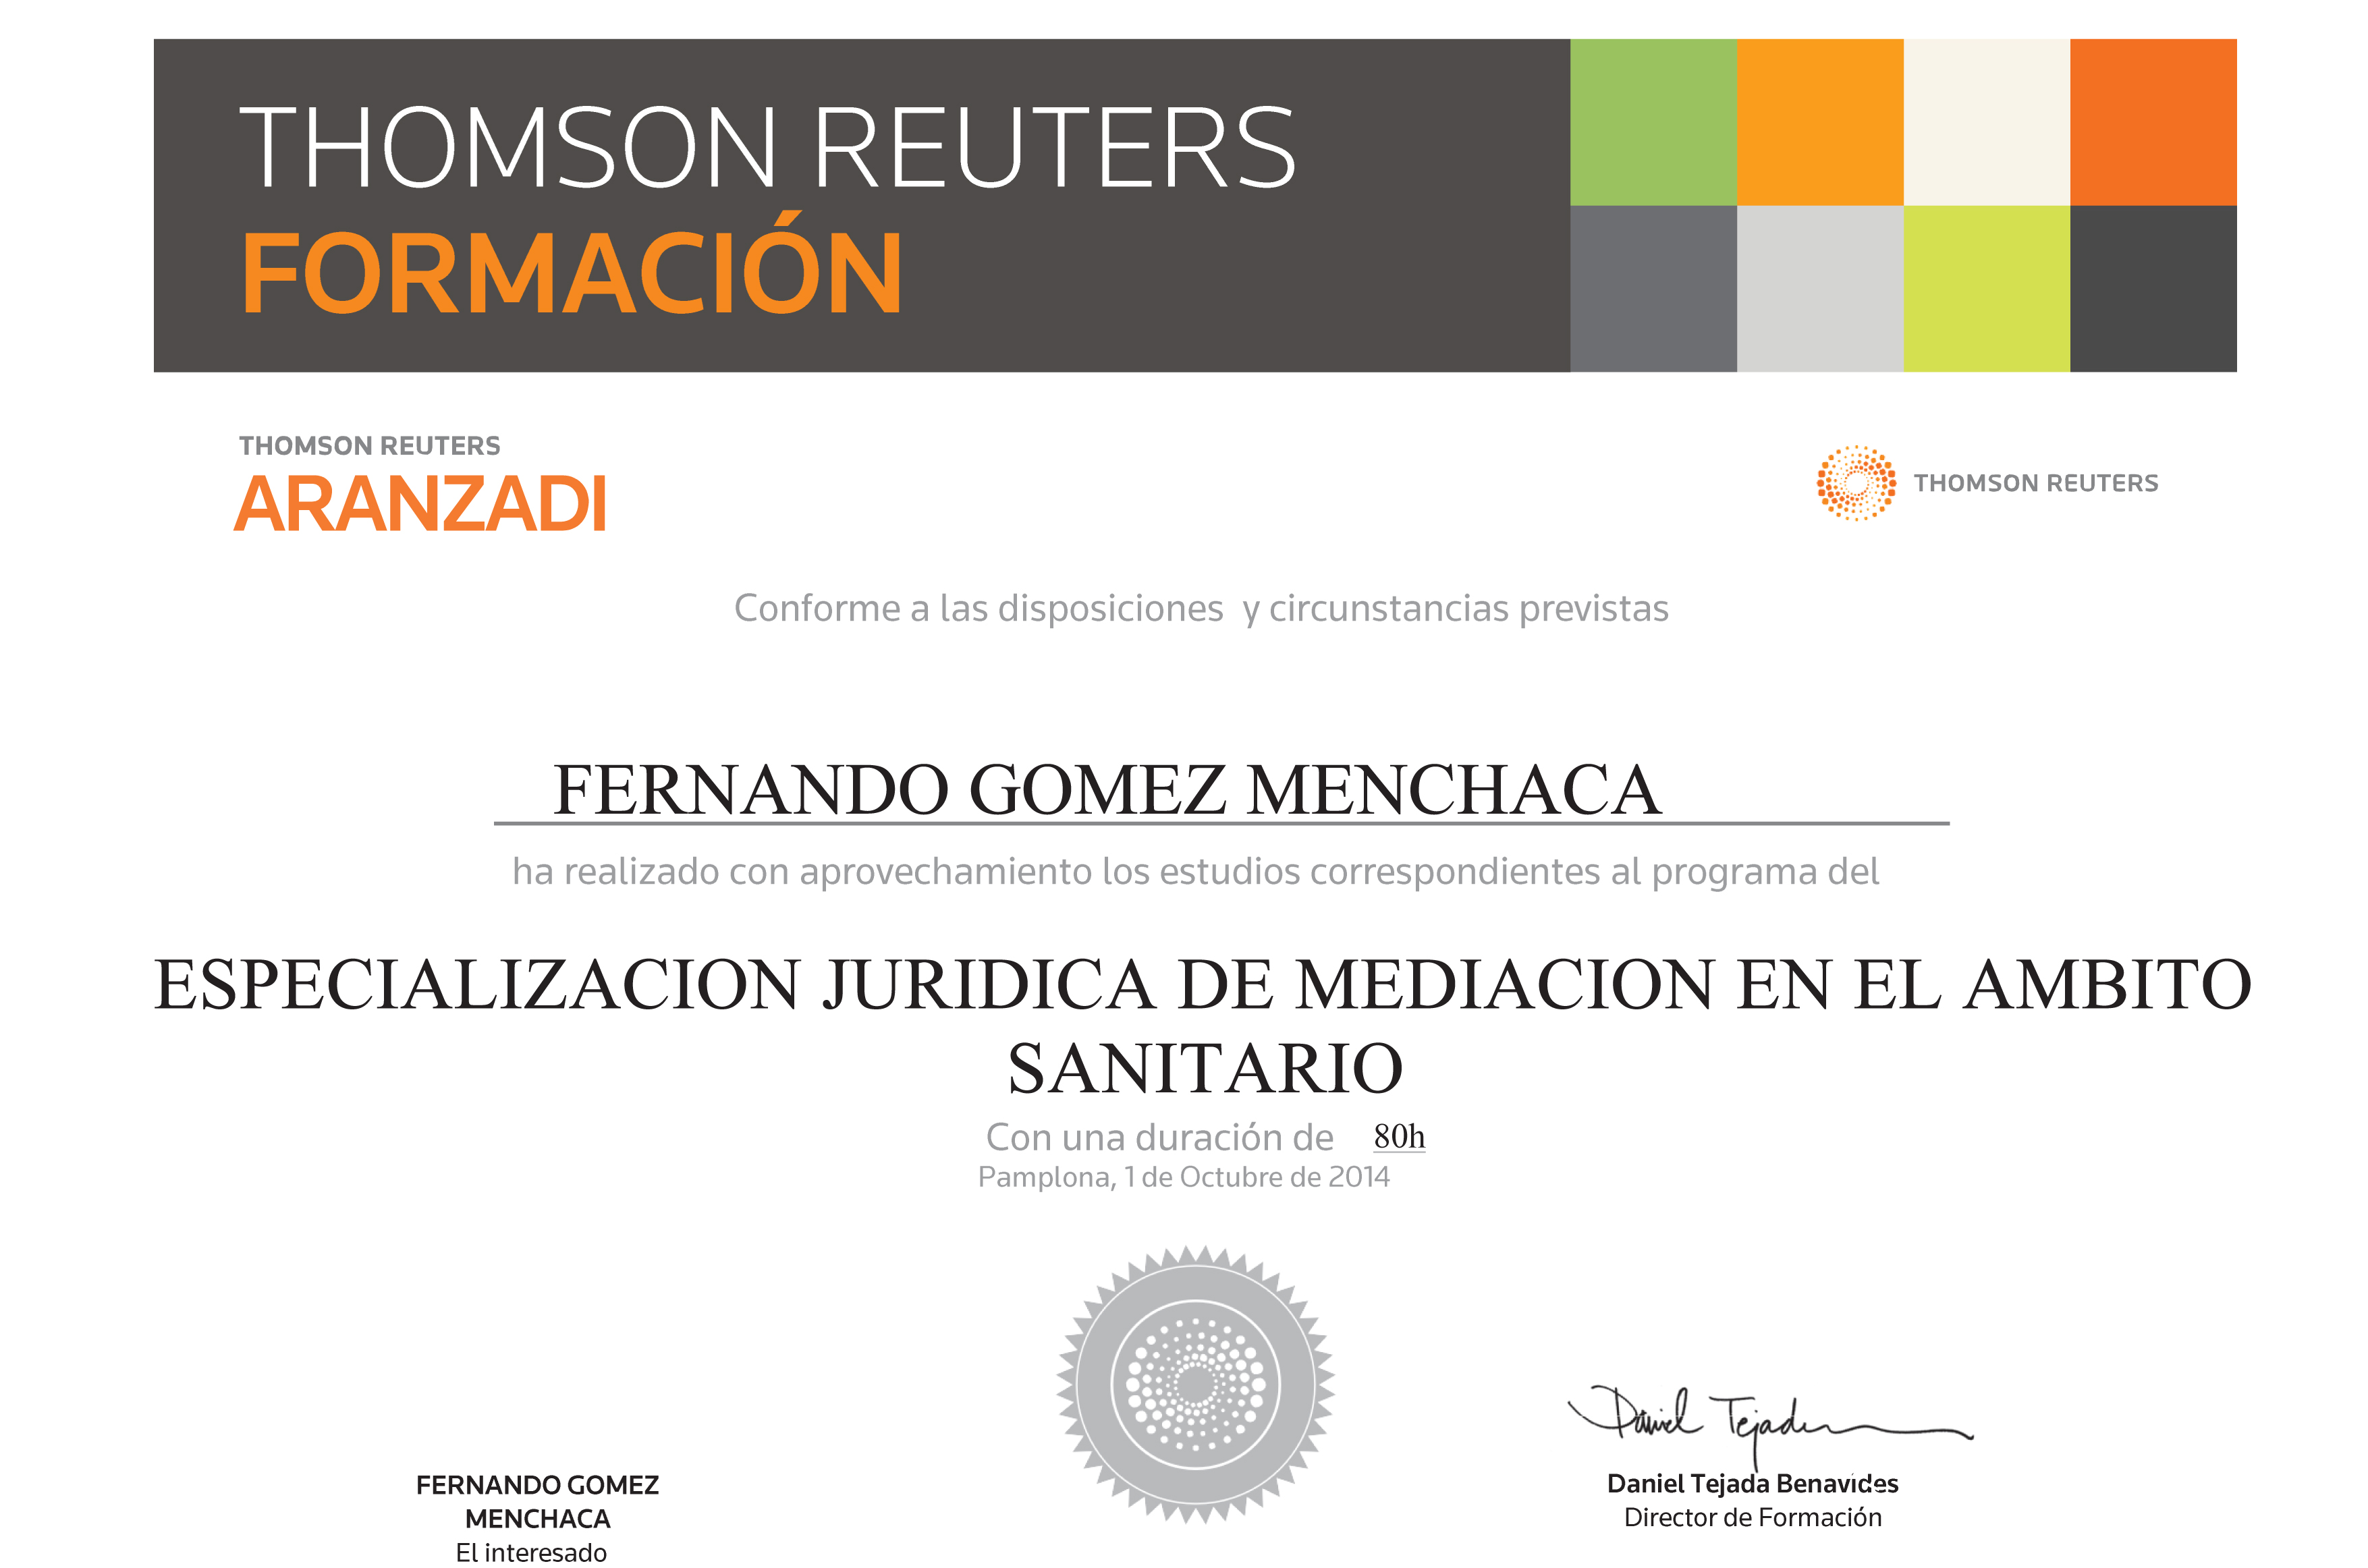 Abogados Gómez Menchaca título “Especialista en mediación del derecho sanitario